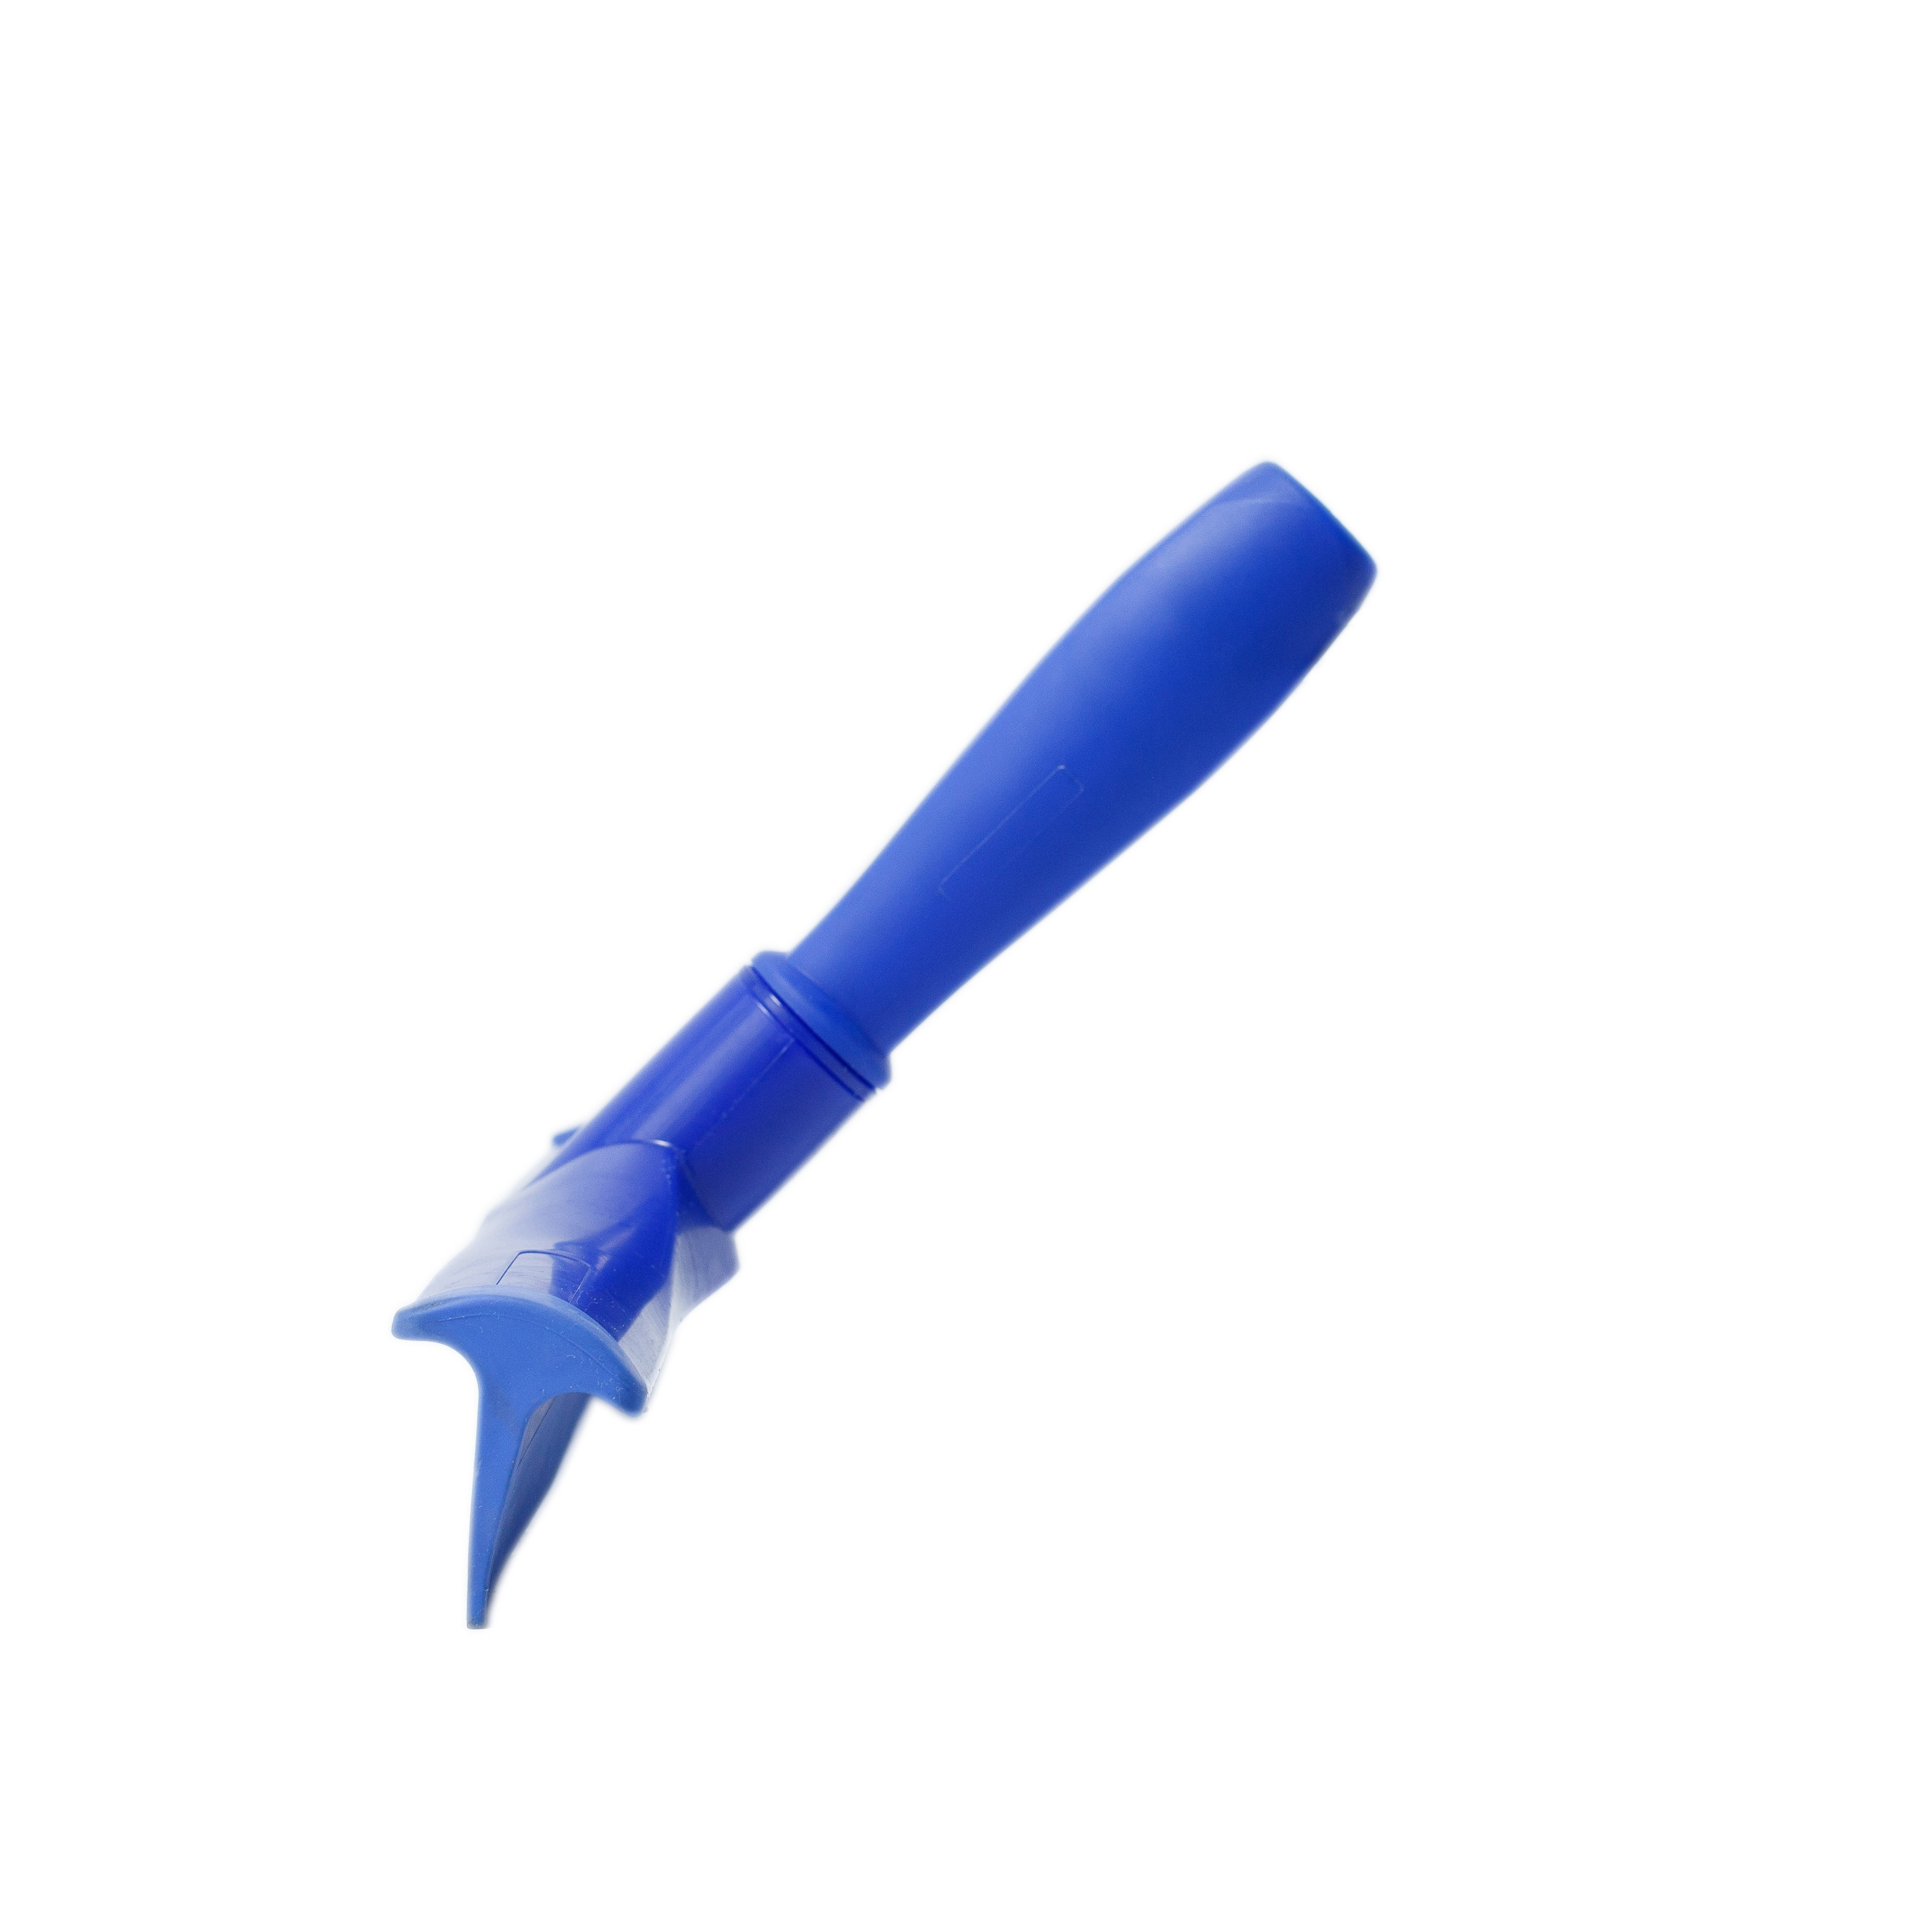 Сгон HACCPER сверхгигиеничный ручной однолезвенный с мини-рукояткой, 300 мм, синий